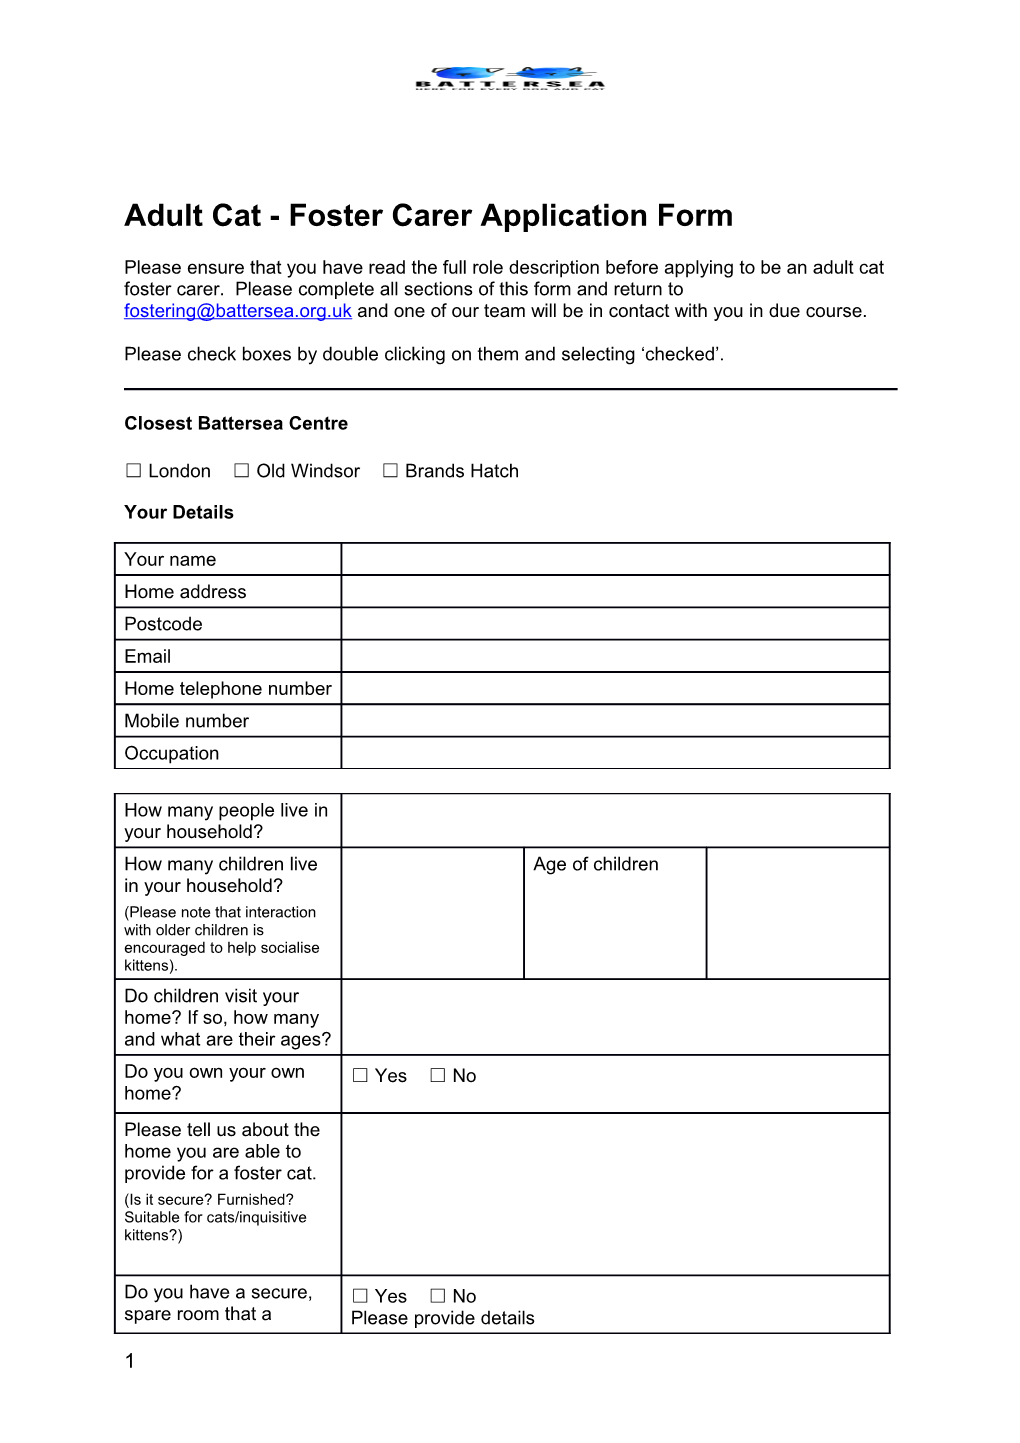 Adult Cat - Foster Carer Application Form